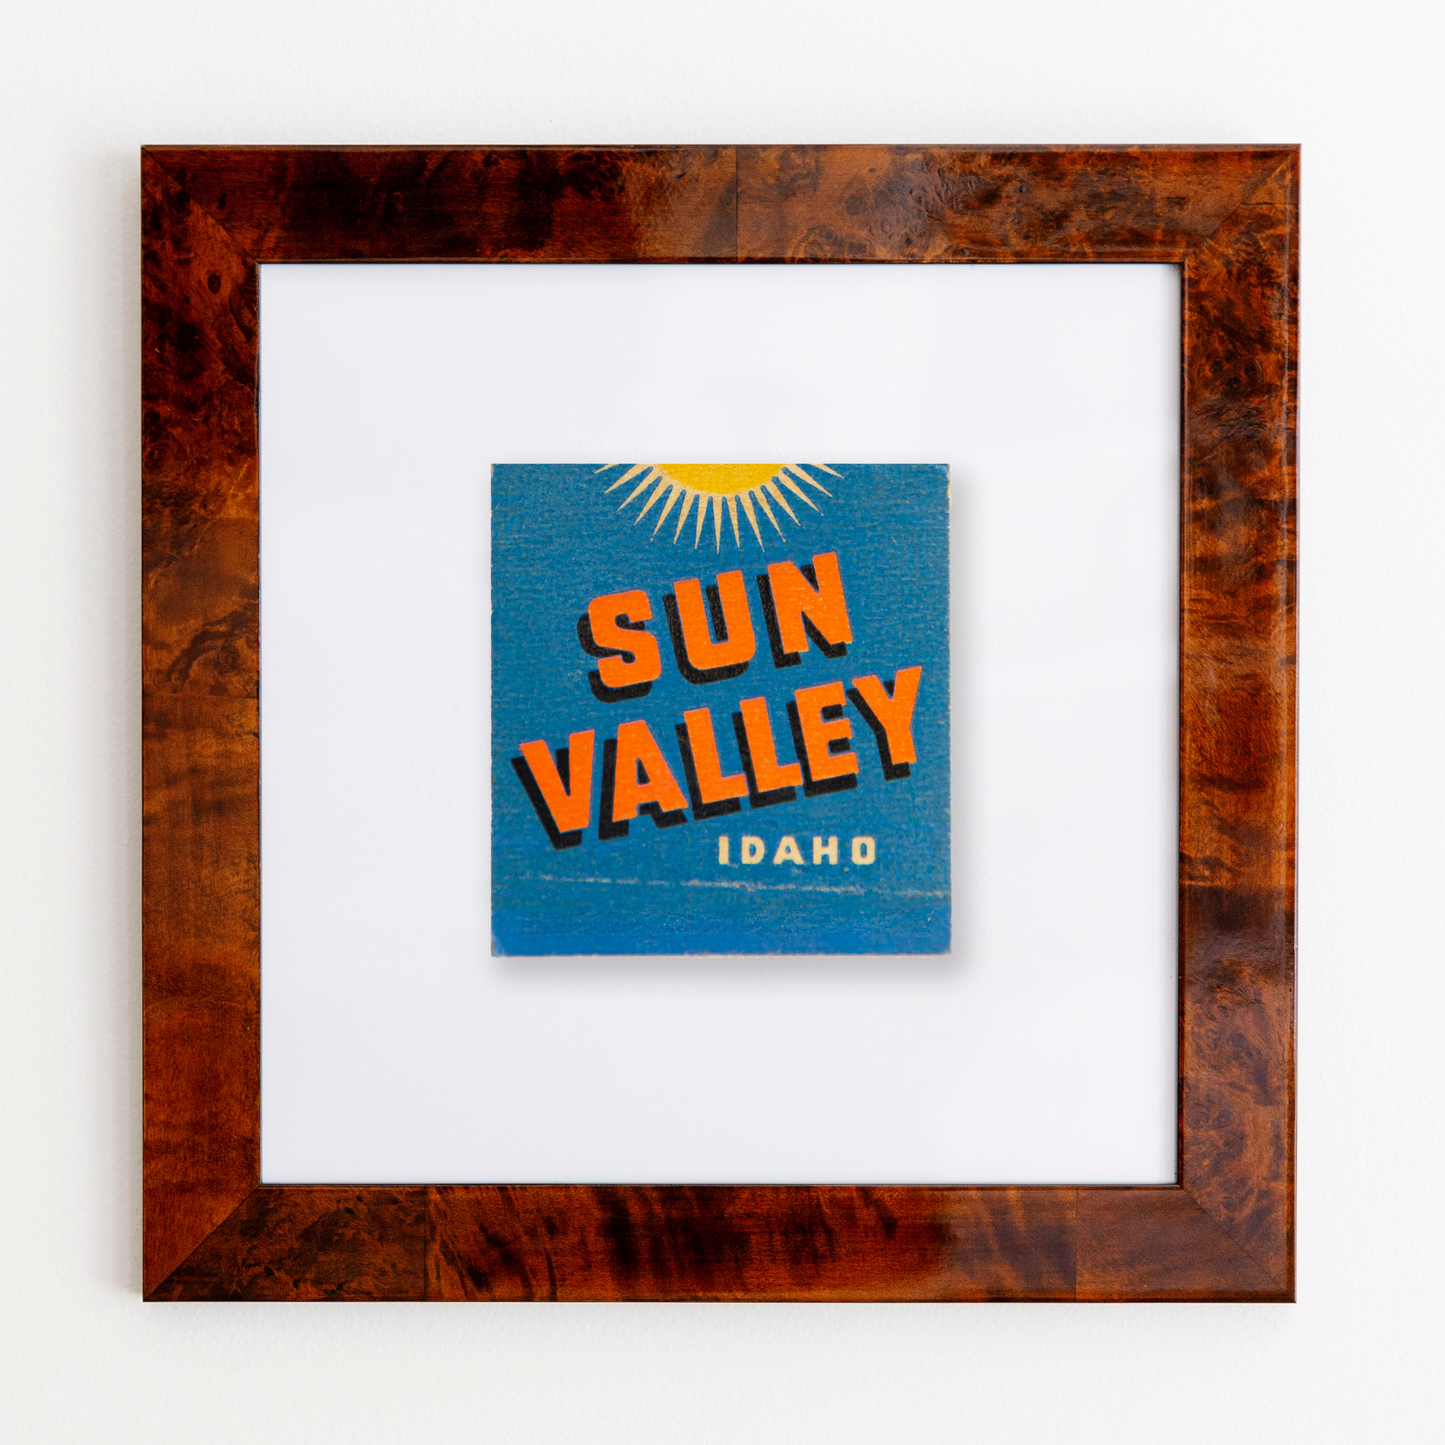 Sun Valley (dark blue) front